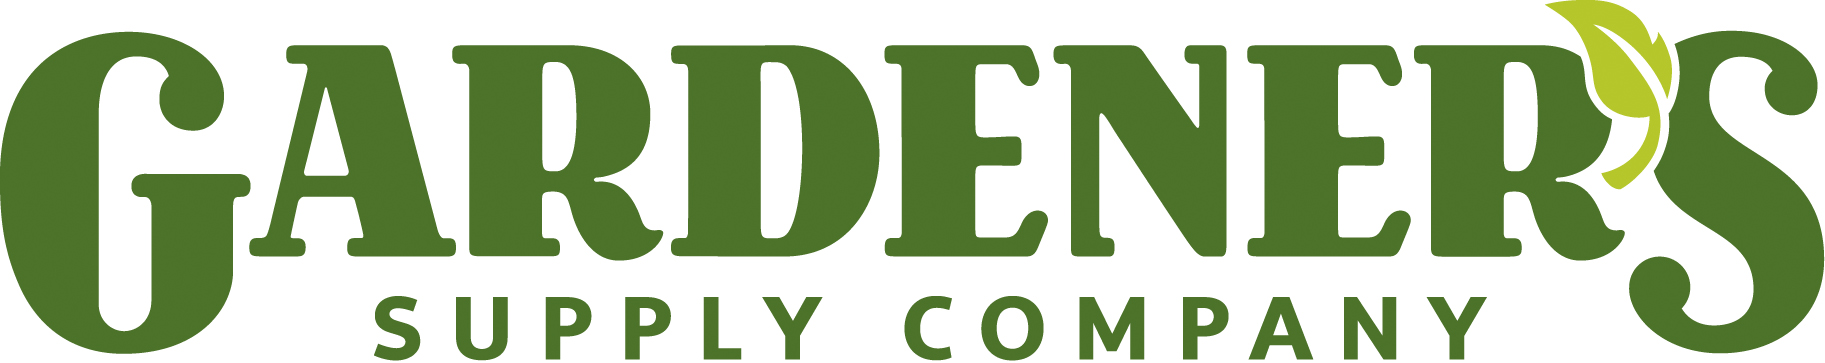 Gardener's Supply Company Logo